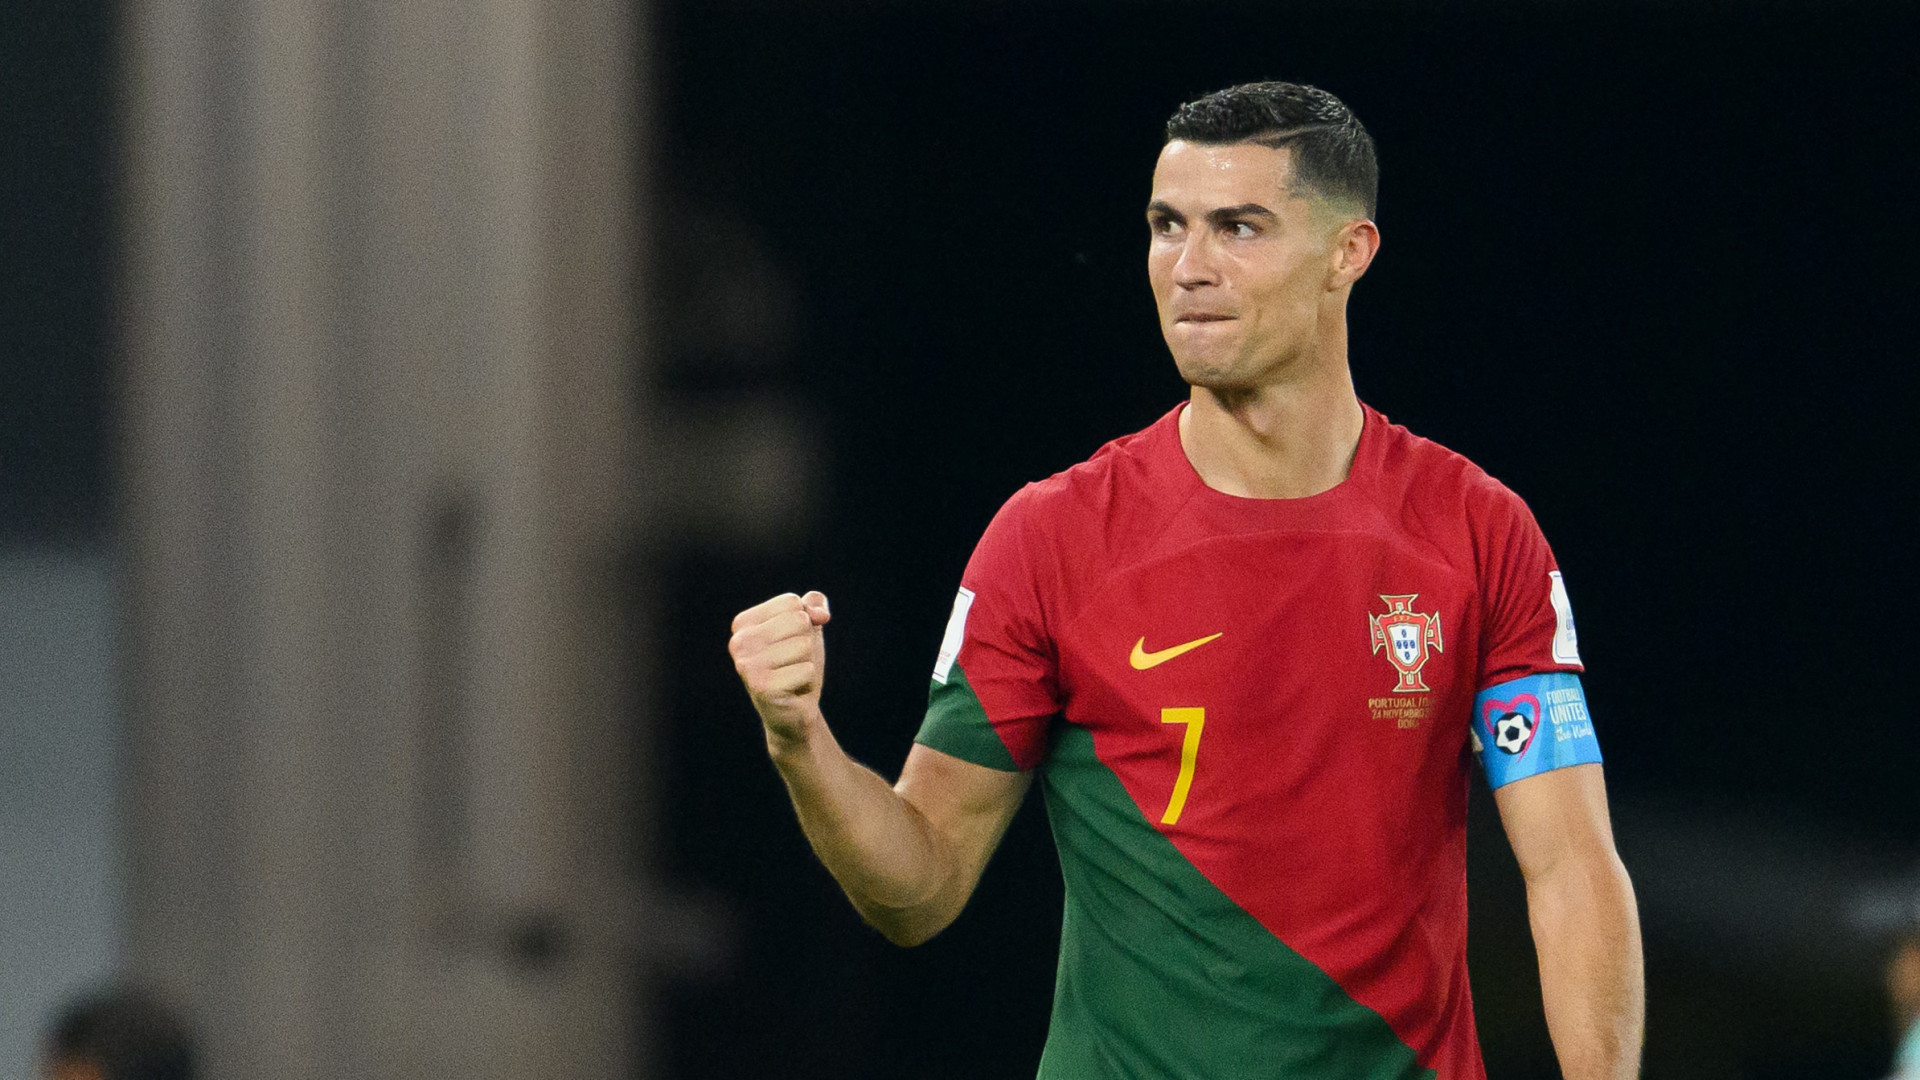 Cristiano Ronaldo admite fase ruim e que pensou em abandonar seleção portuguesa